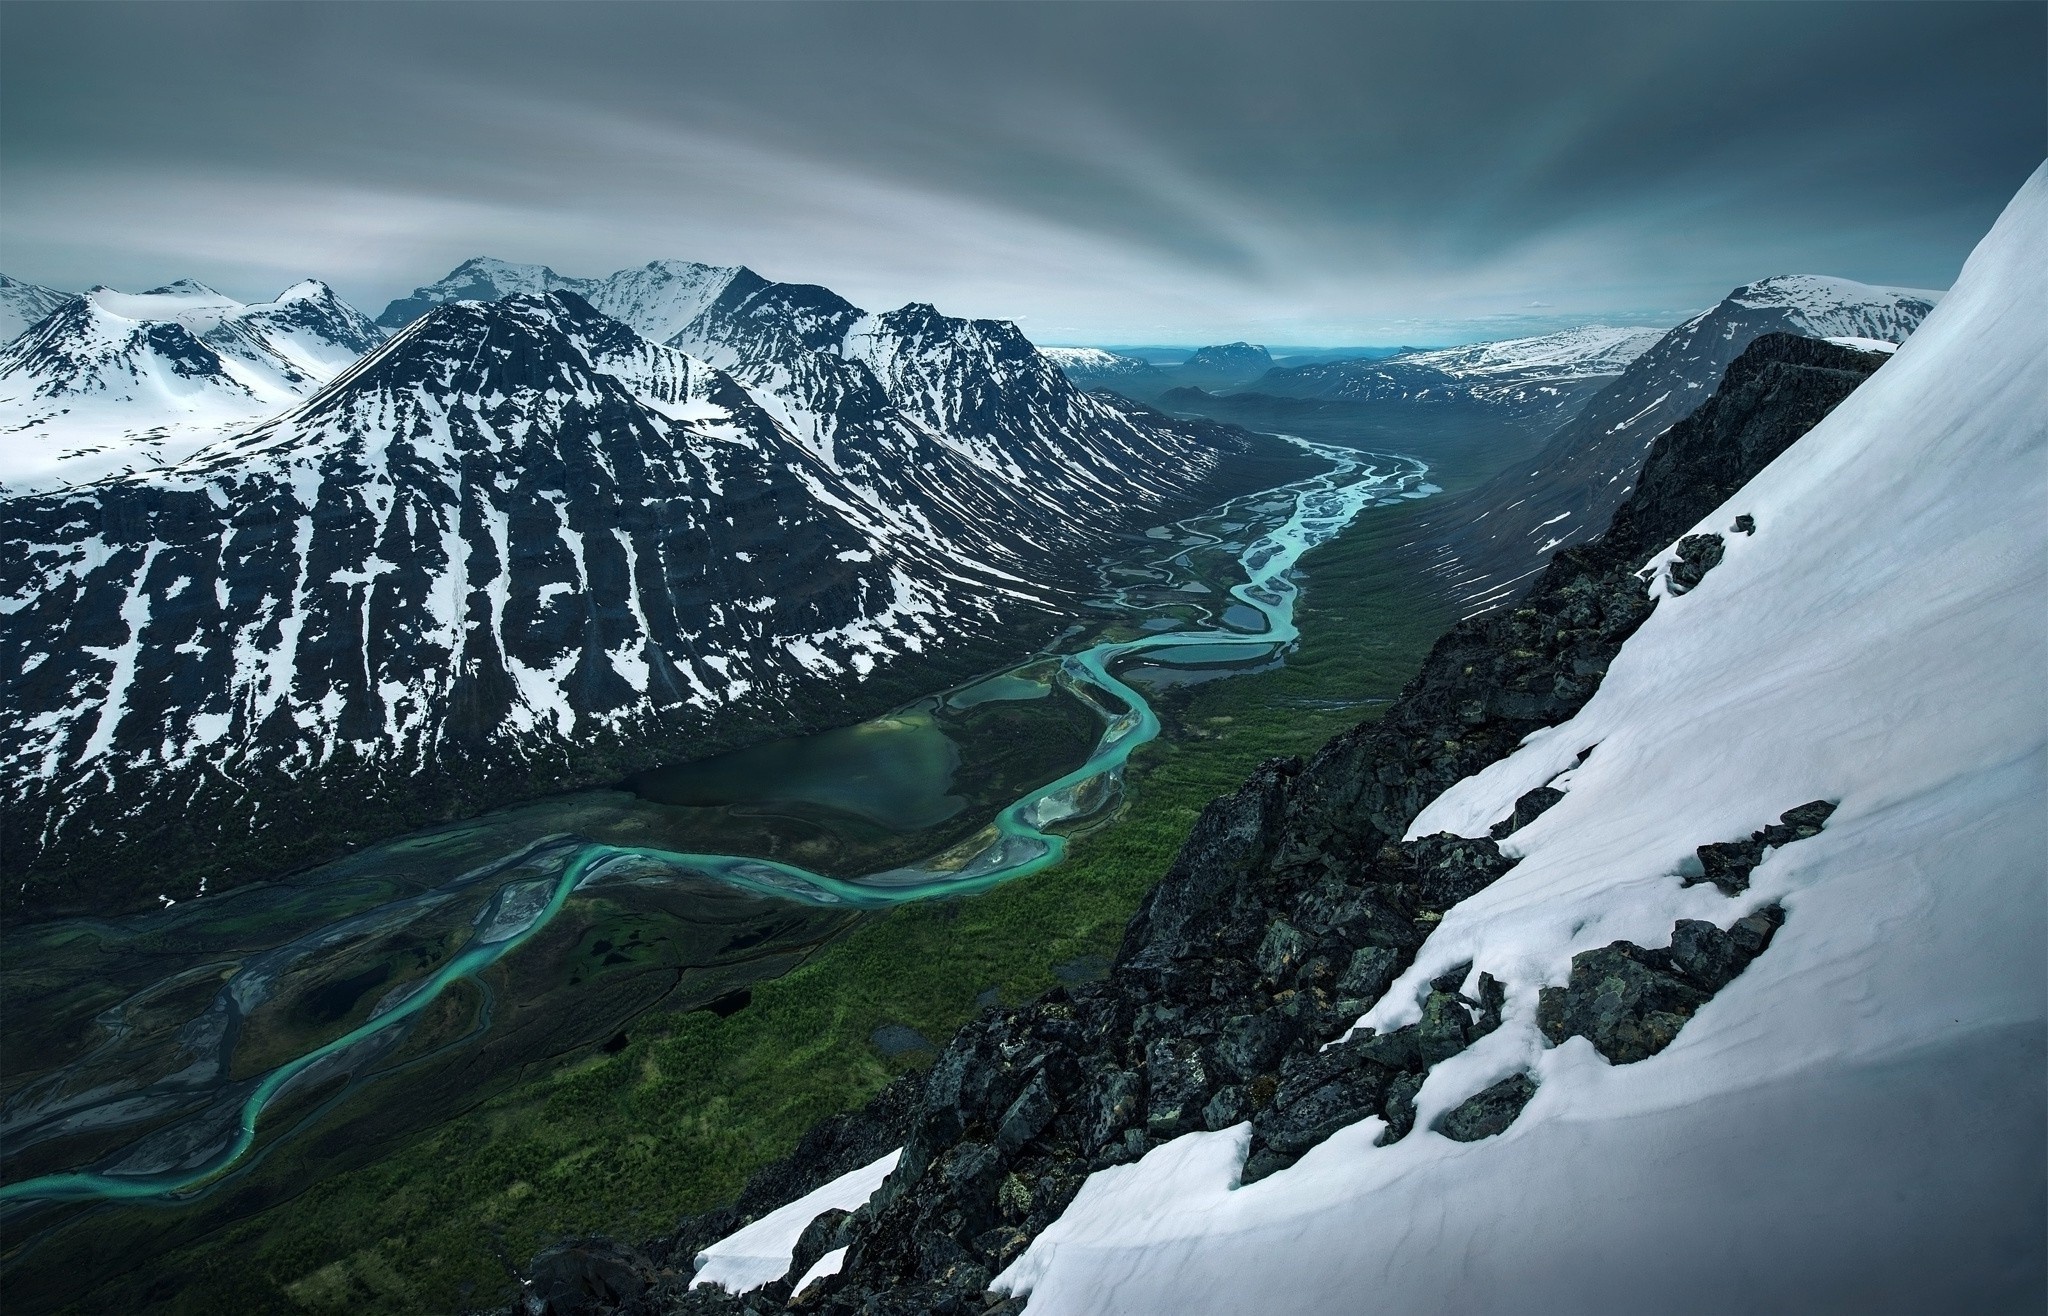 Скачать обои бесплатно Река, Снег, Гора, Долина, Швеция, Ландшафт, Земля/природа картинка на рабочий стол ПК